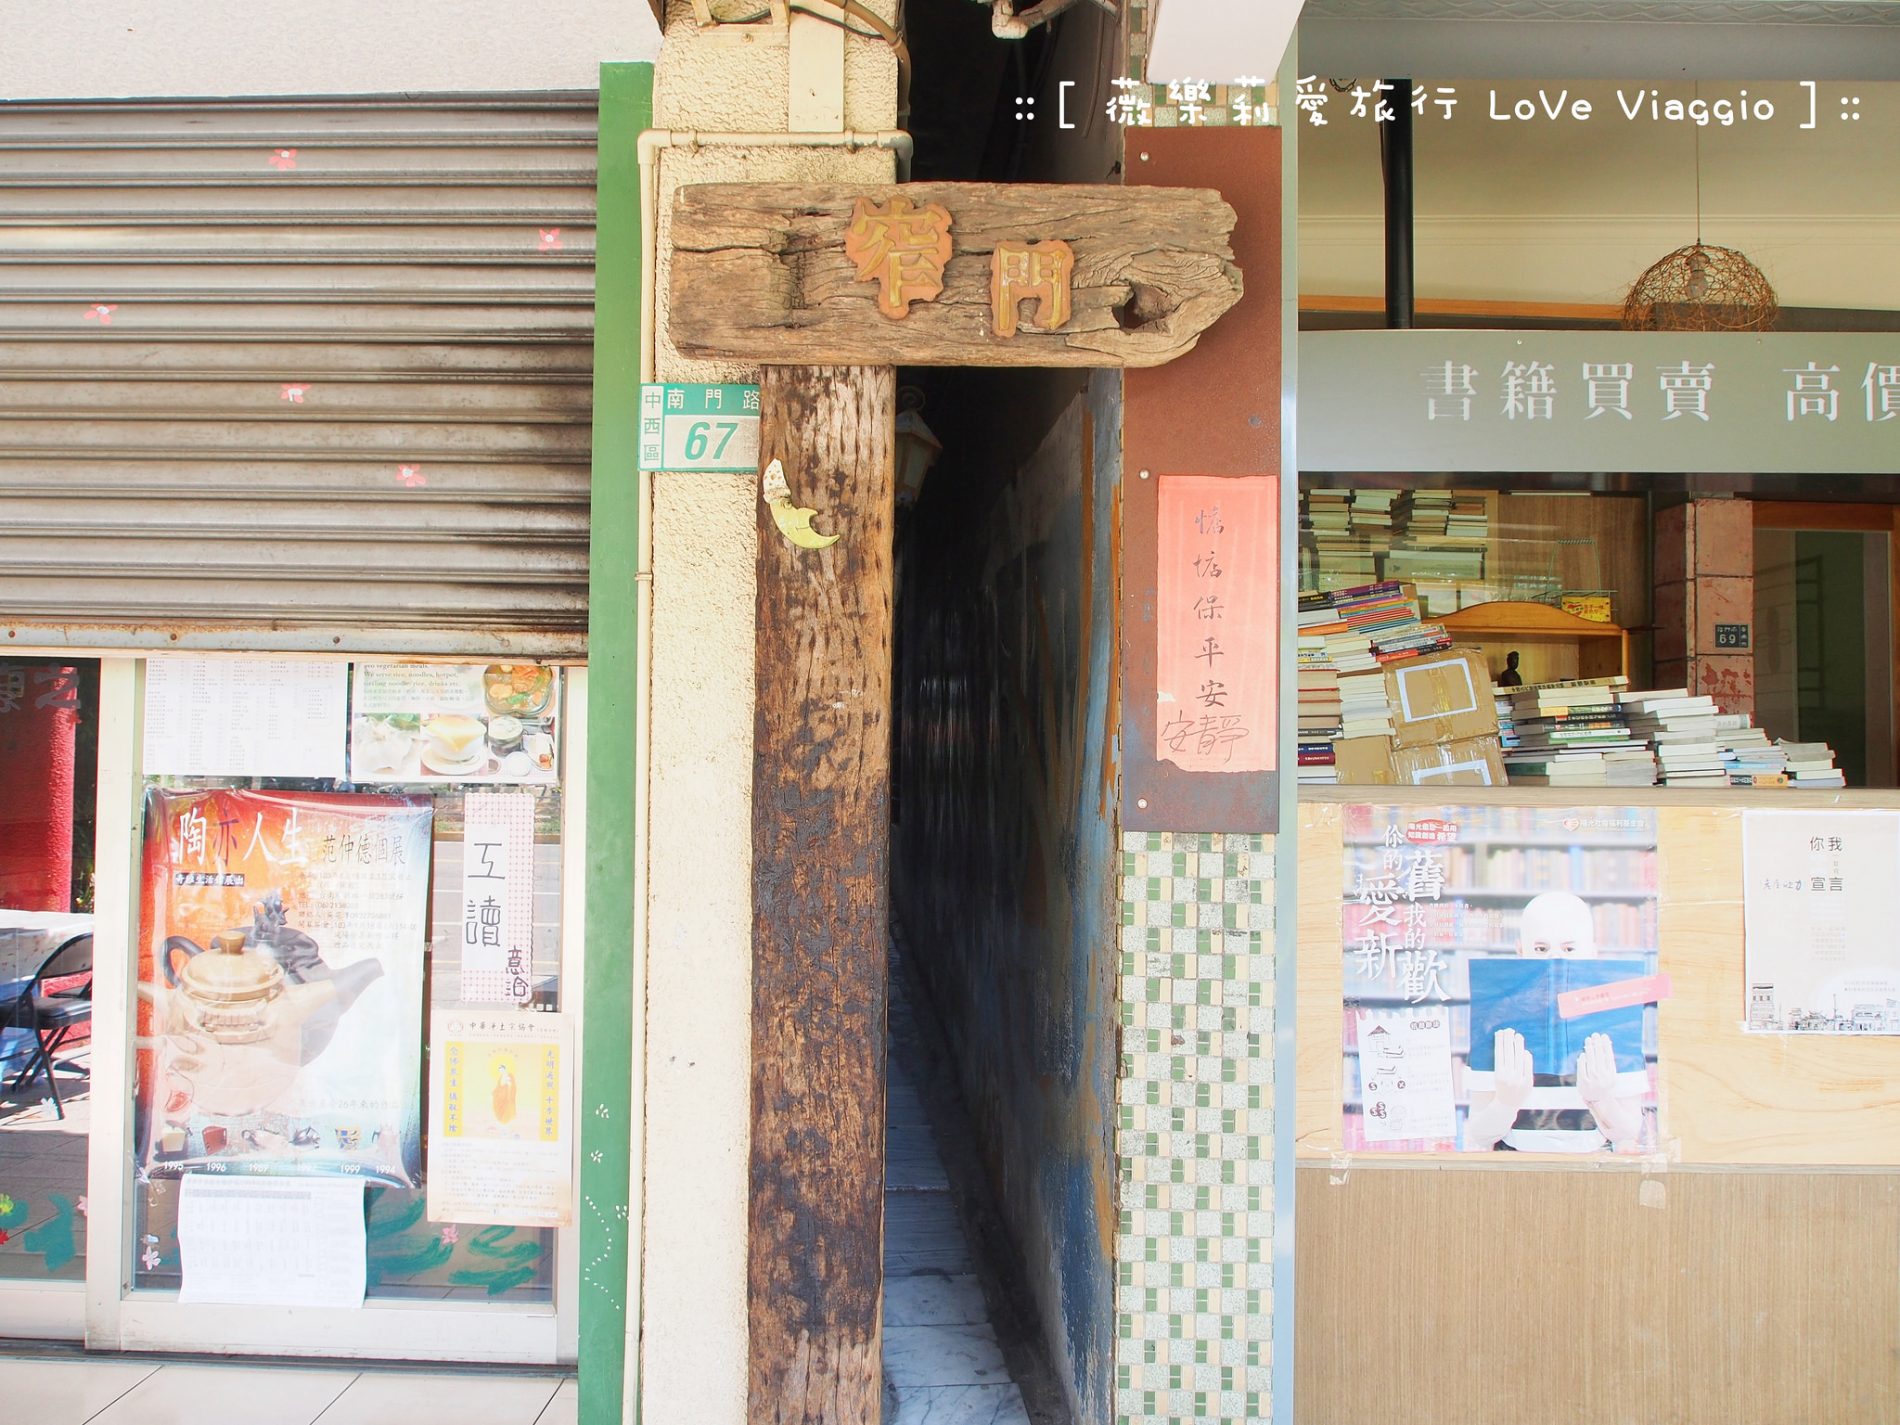 台南窄門咖啡,台南餐廳,窄門咖啡,窄門咖啡館,老屋餐廳 @薇樂莉 Love Viaggio | 旅行.生活.攝影